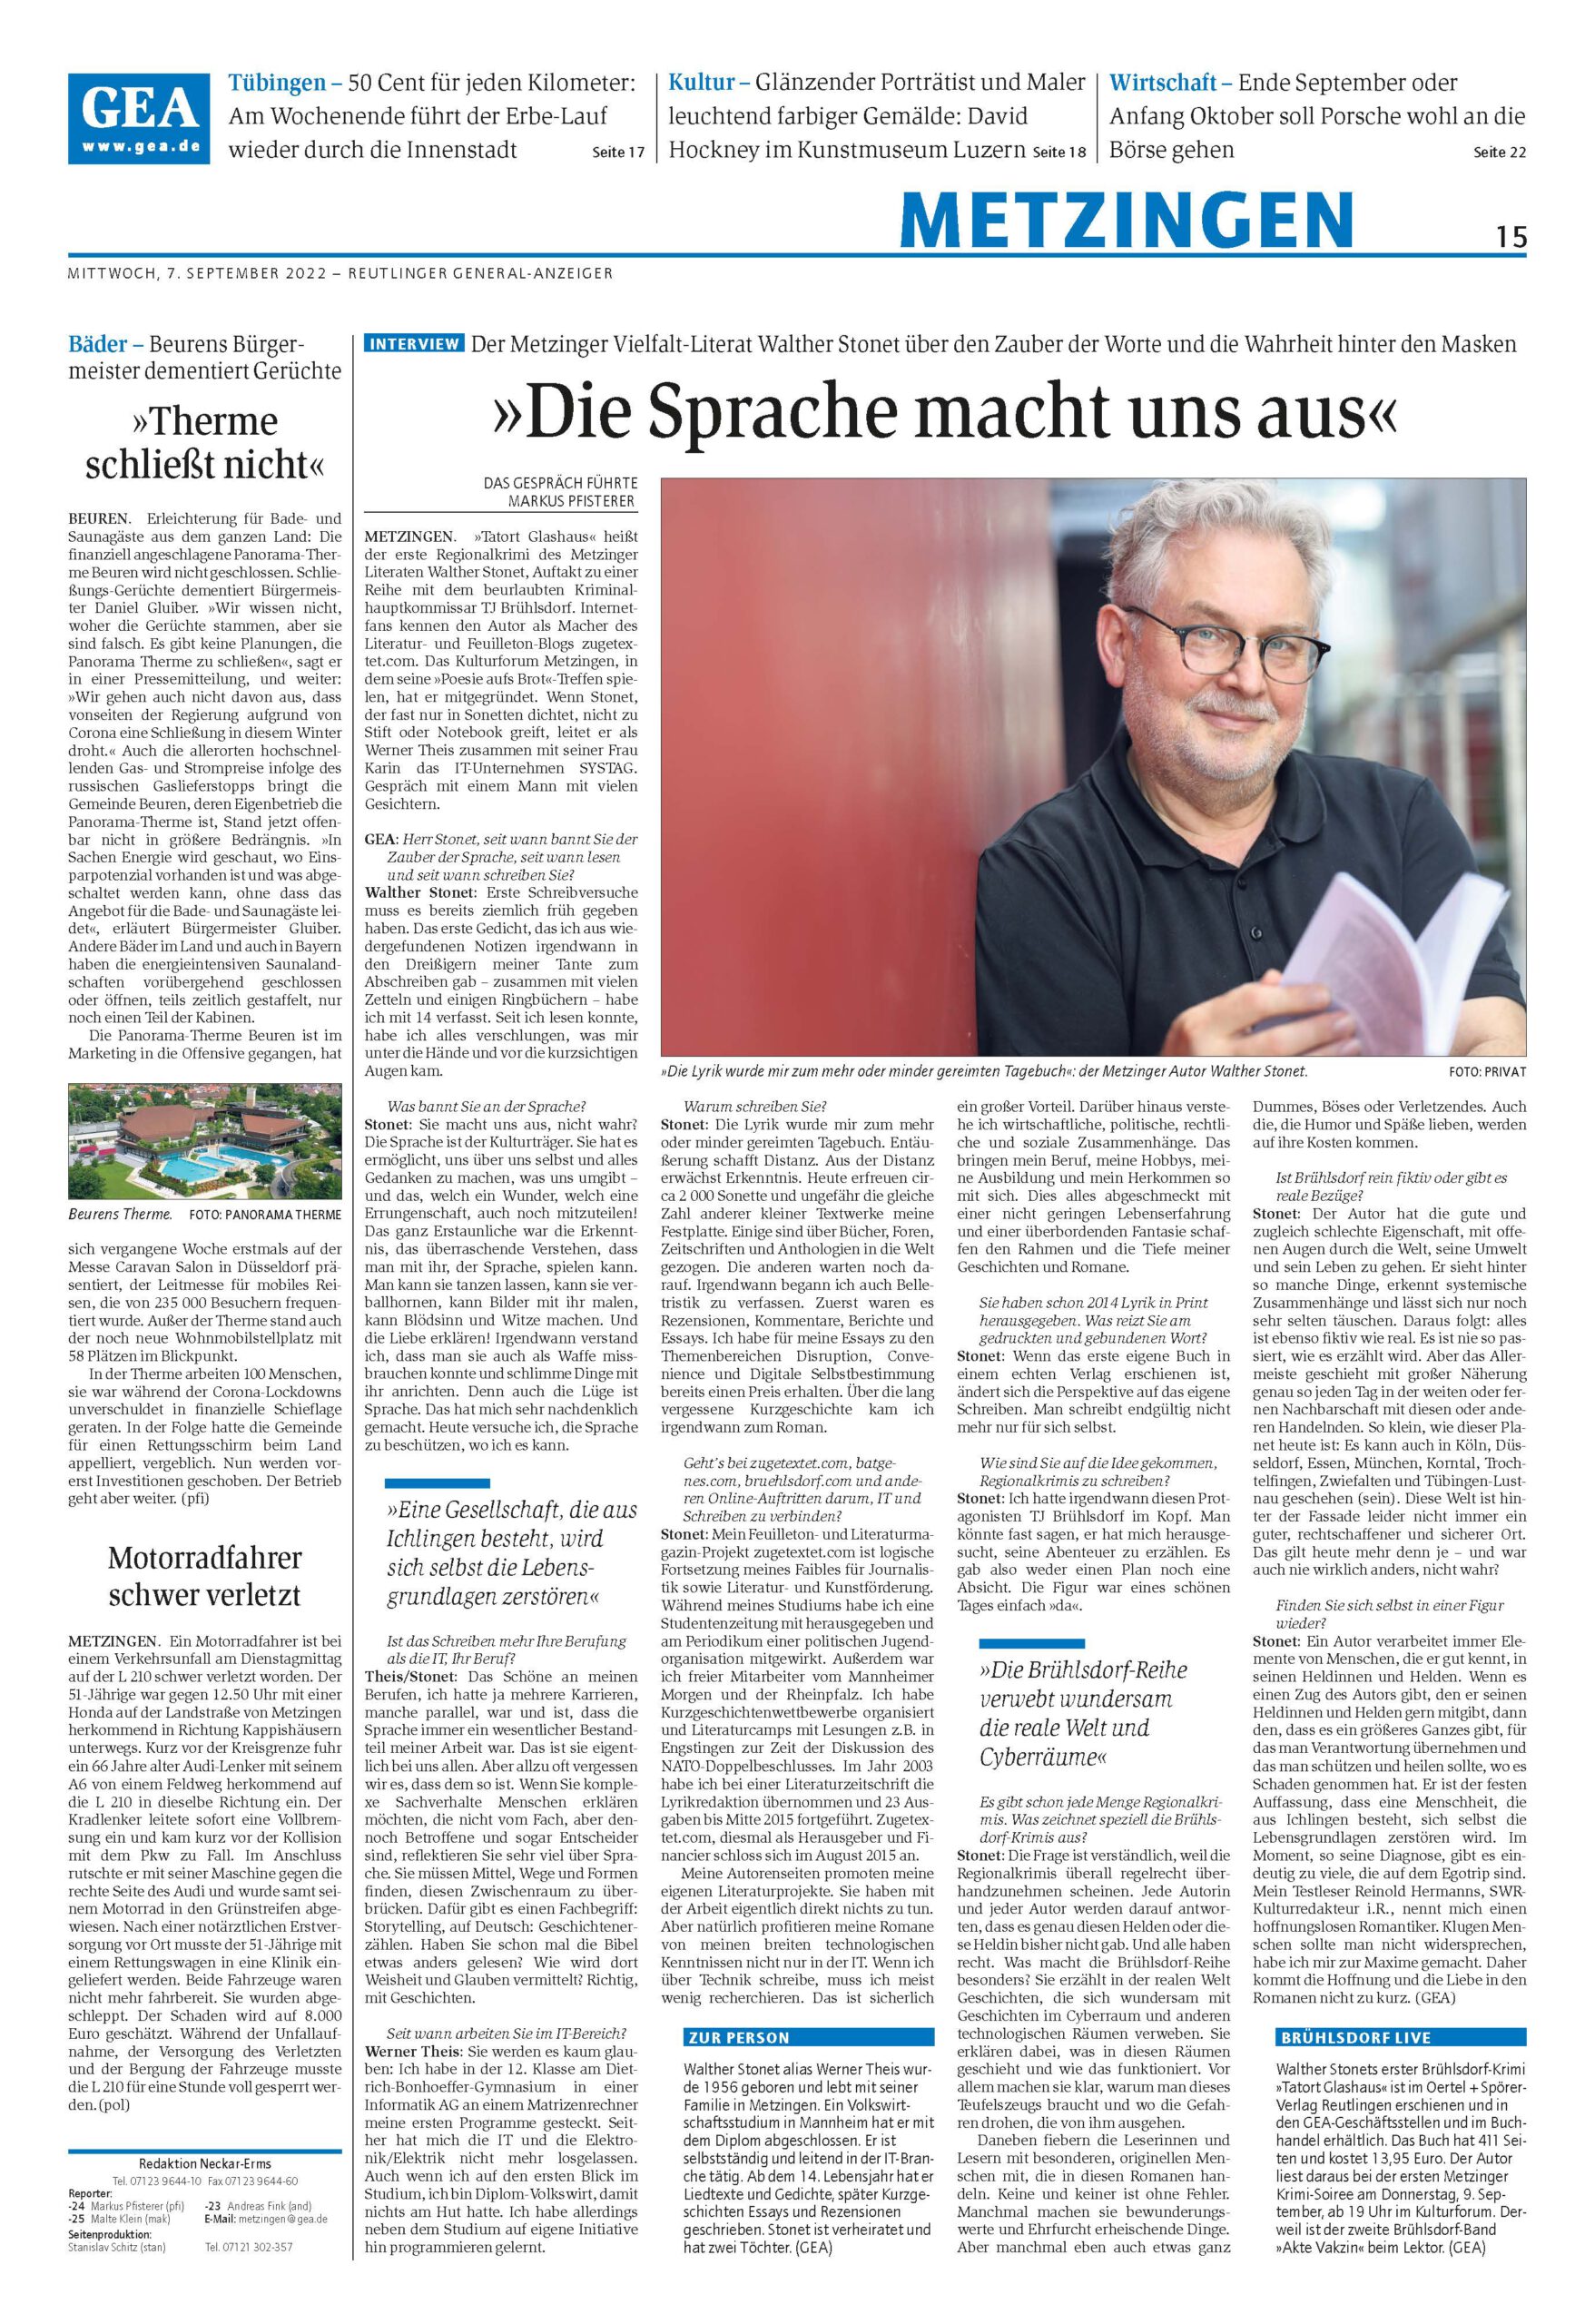 Reutlinger GEA am 07.09.2022:  Die Sprache macht uns aus – Das ungekürzte Interview.